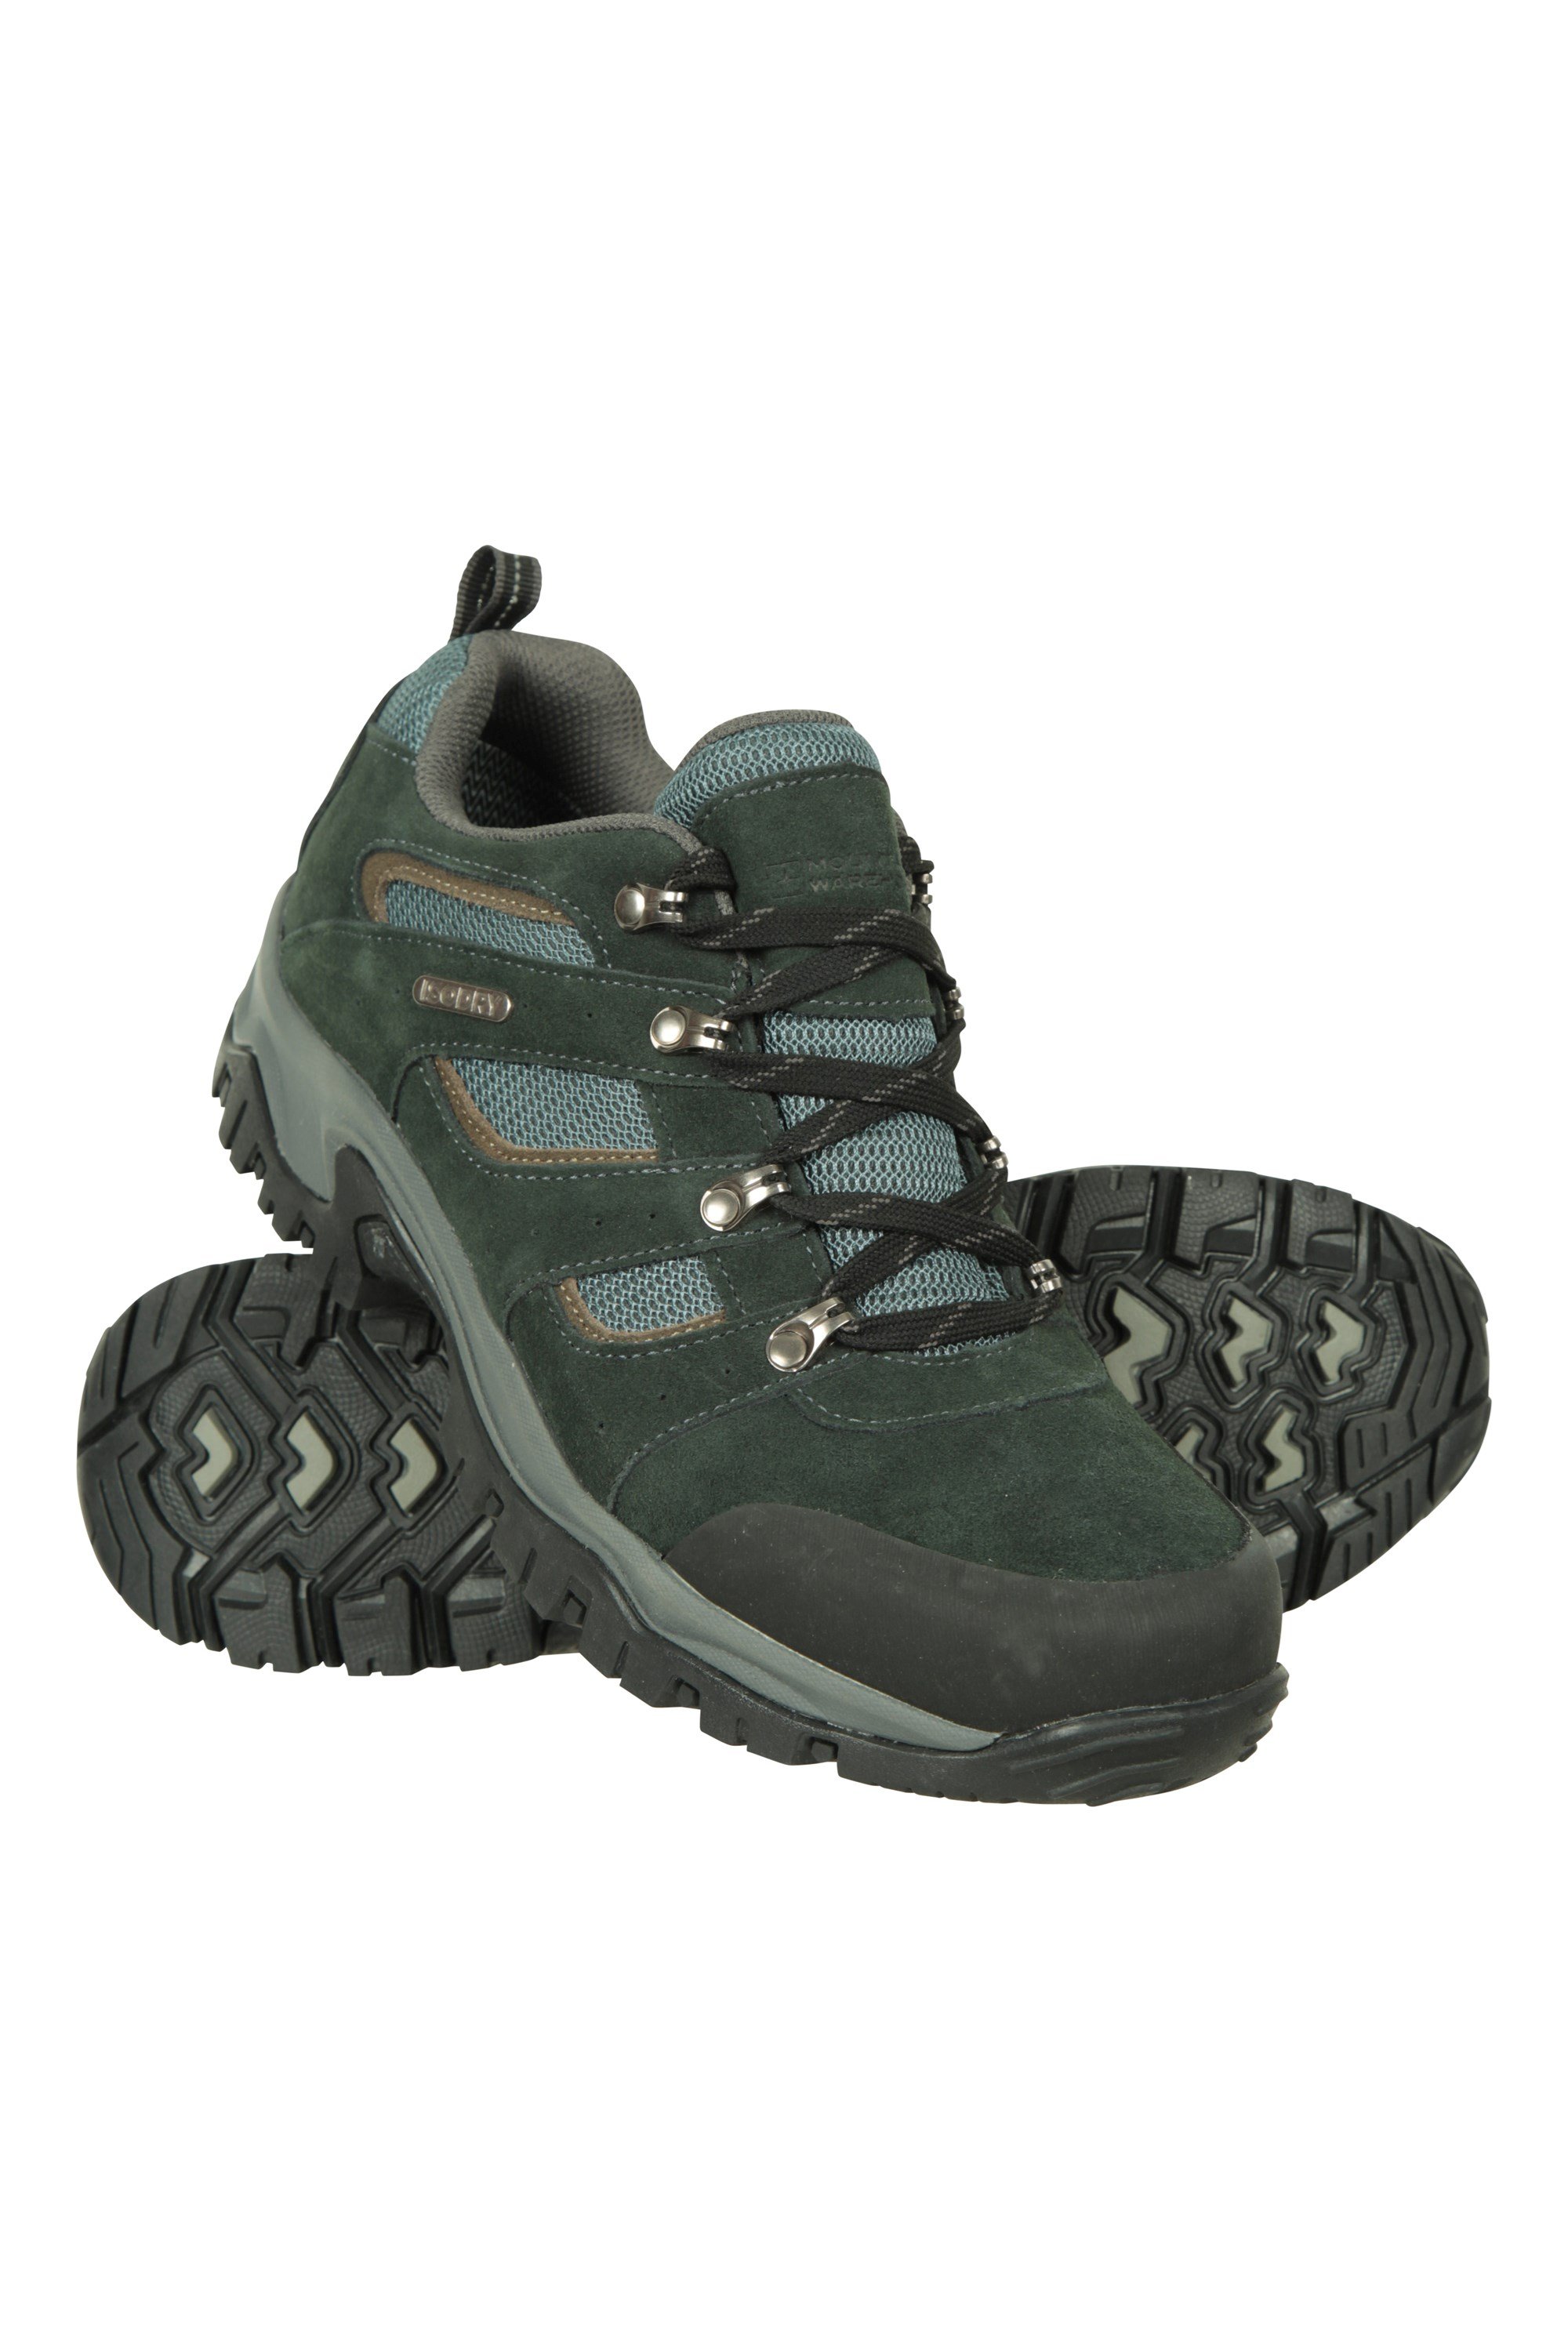 Voyage Mens Waterproof Hiking Shoes